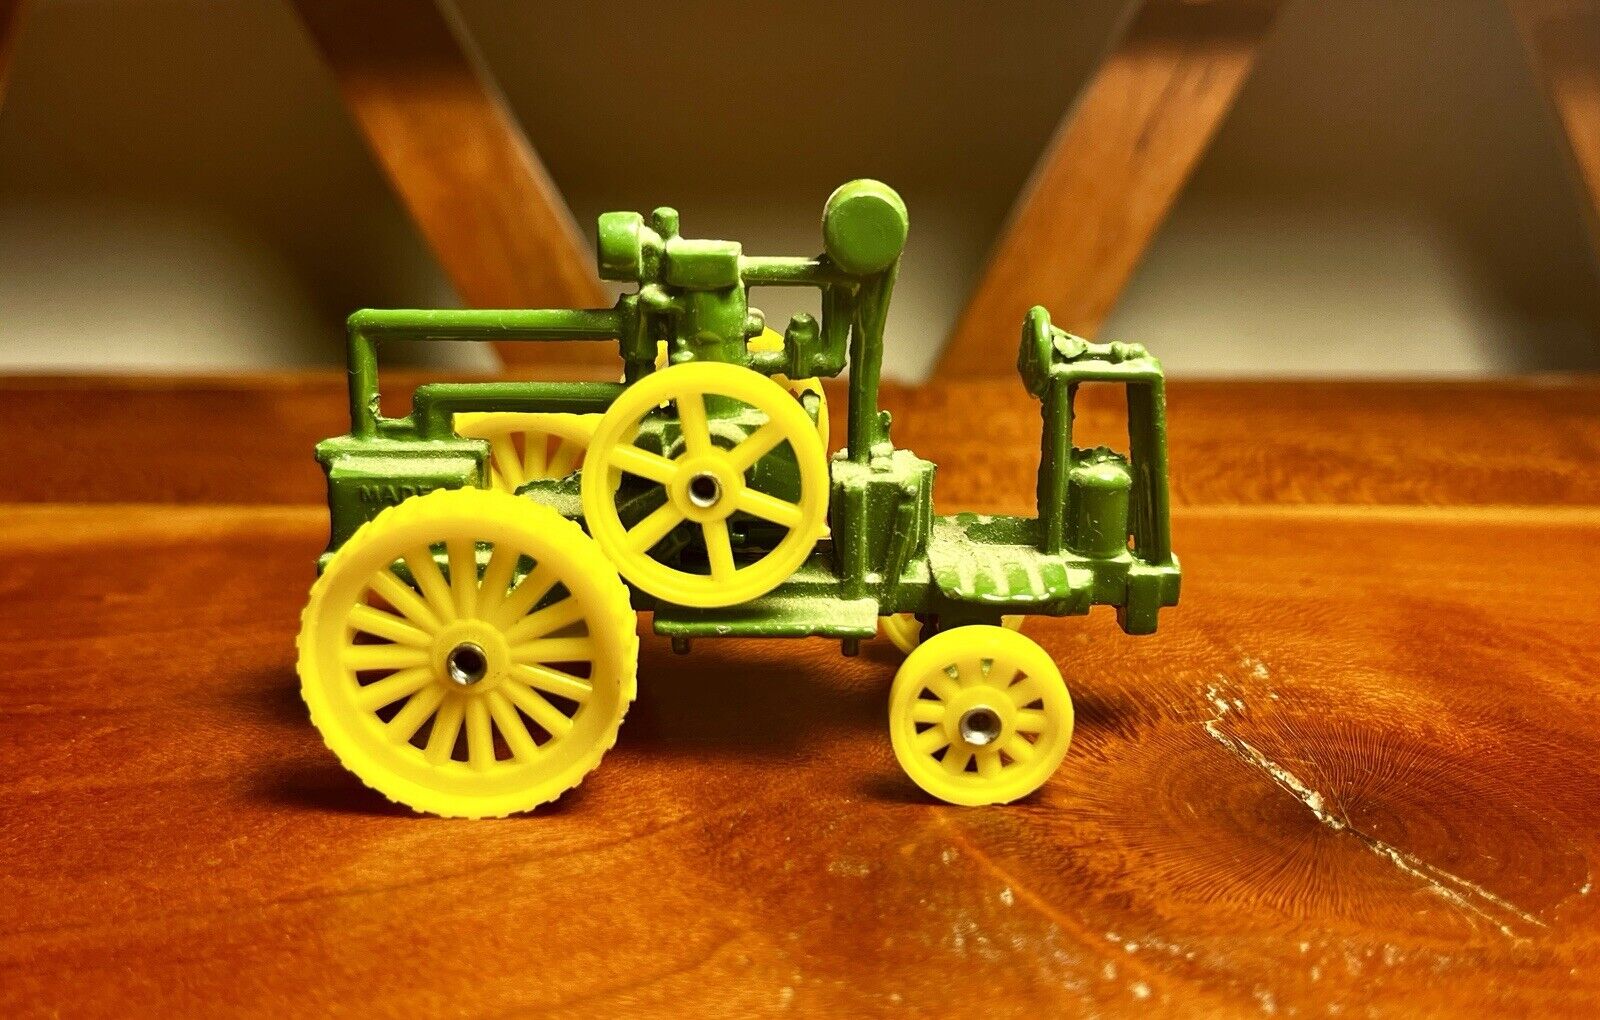 Ertl Die Cast 1892 Froelich One Stroke Toy Tractor John Deere 1:64 No.561 USA